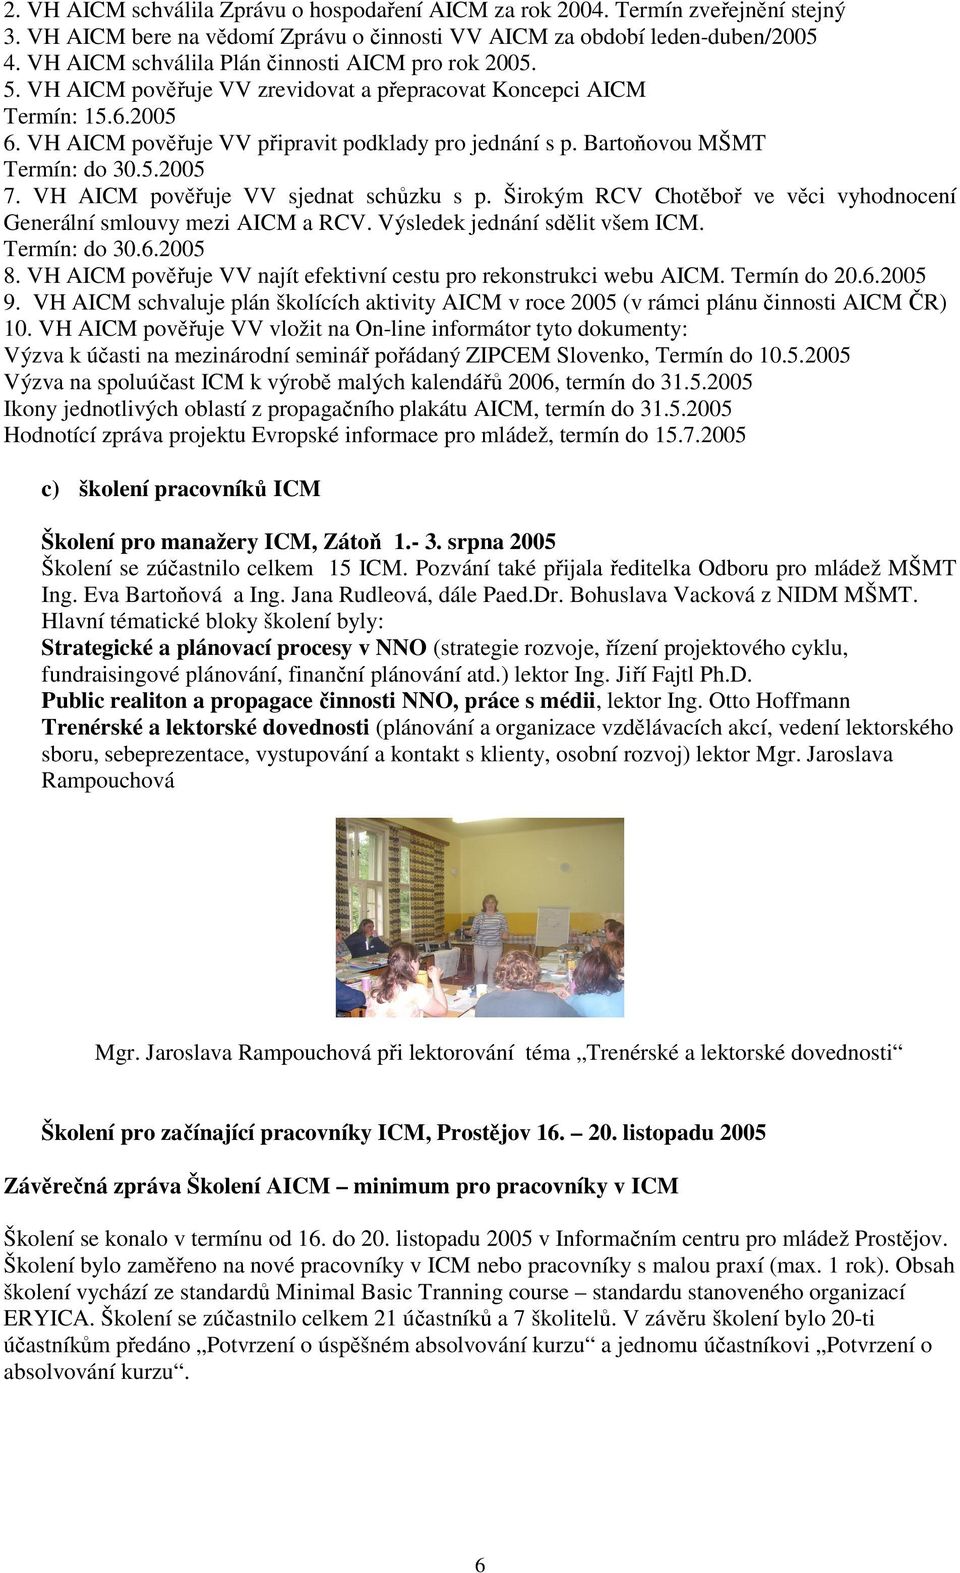 Bartoňovou MŠMT Termín: do 30.5.2005 7. VH AICM pověřuje VV sjednat schůzku s p. Širokým RCV Chotěboř ve věci vyhodnocení Generální smlouvy mezi AICM a RCV. Výsledek jednání sdělit všem ICM.